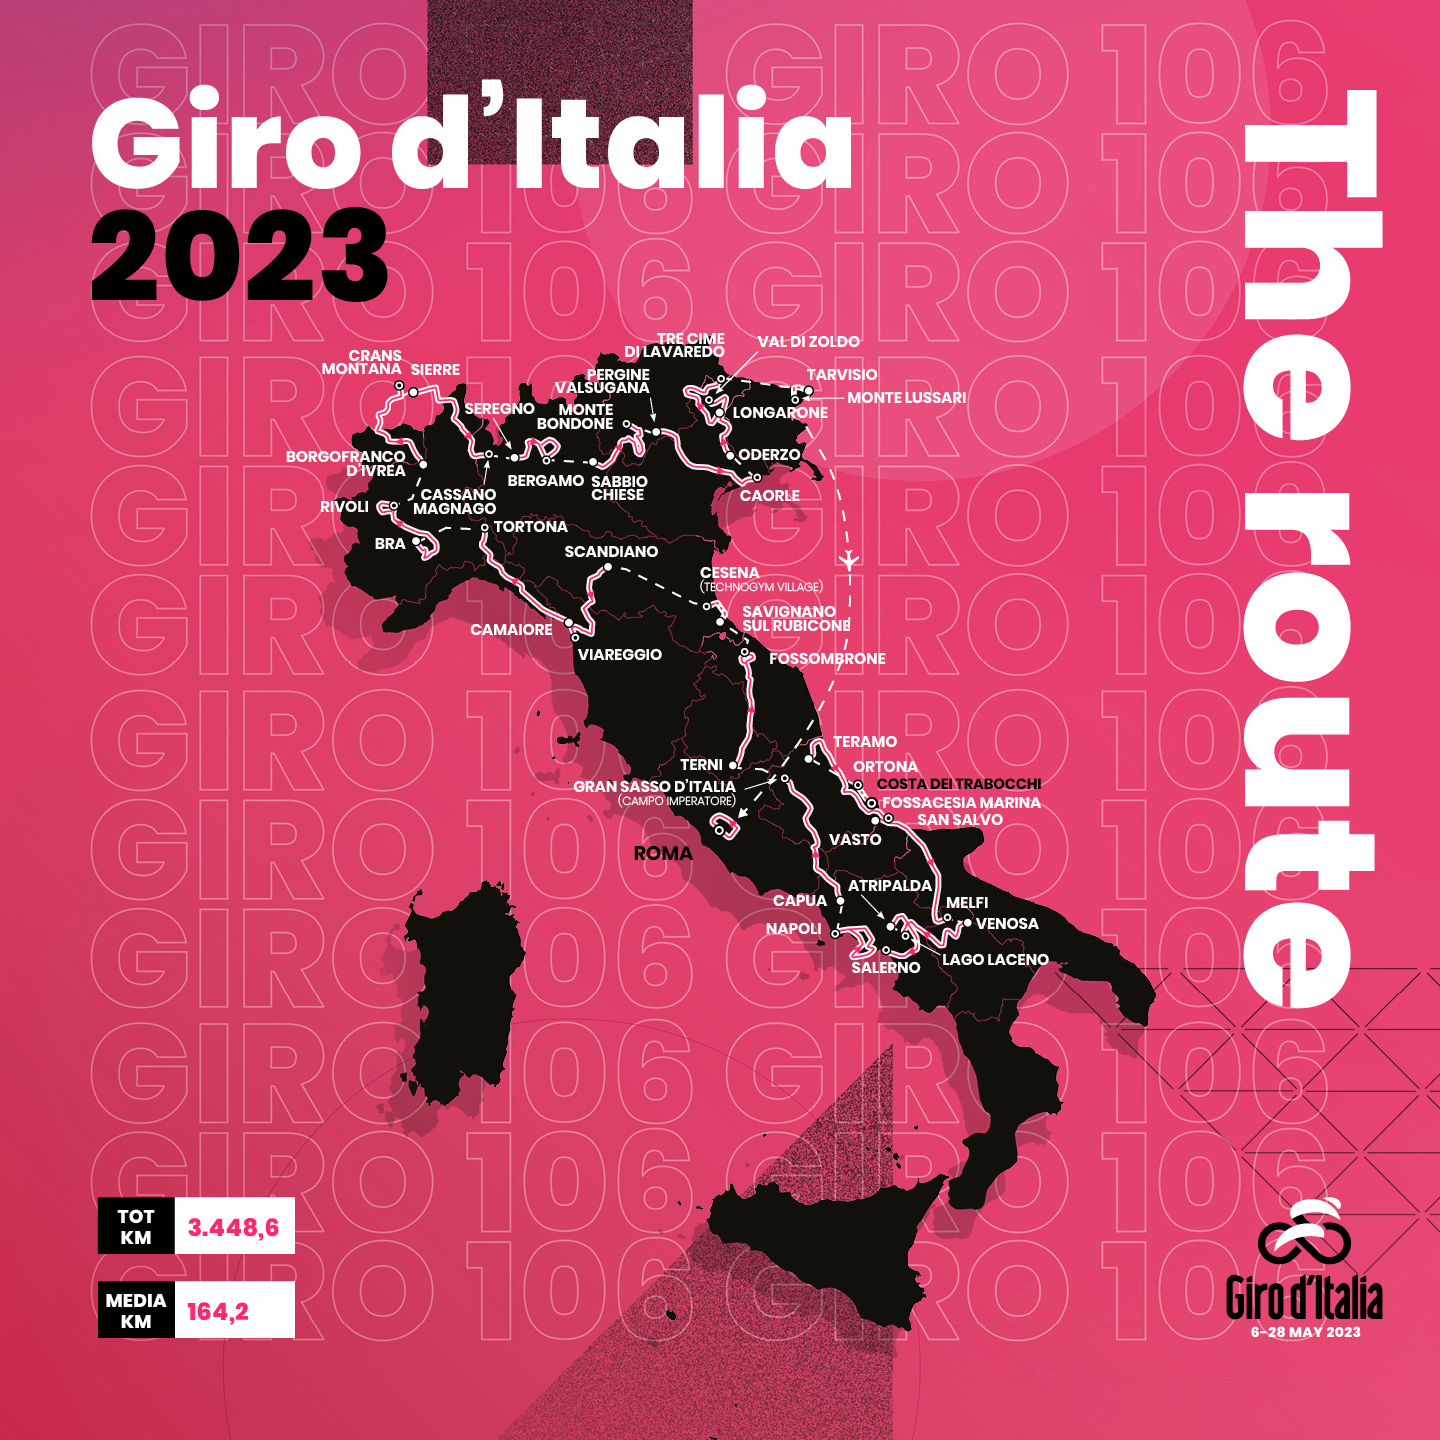 Giro d’Italia 2023: ufficializzate le due tappe irpine. Buonopane: “Cominicia il conto alla rovescia”